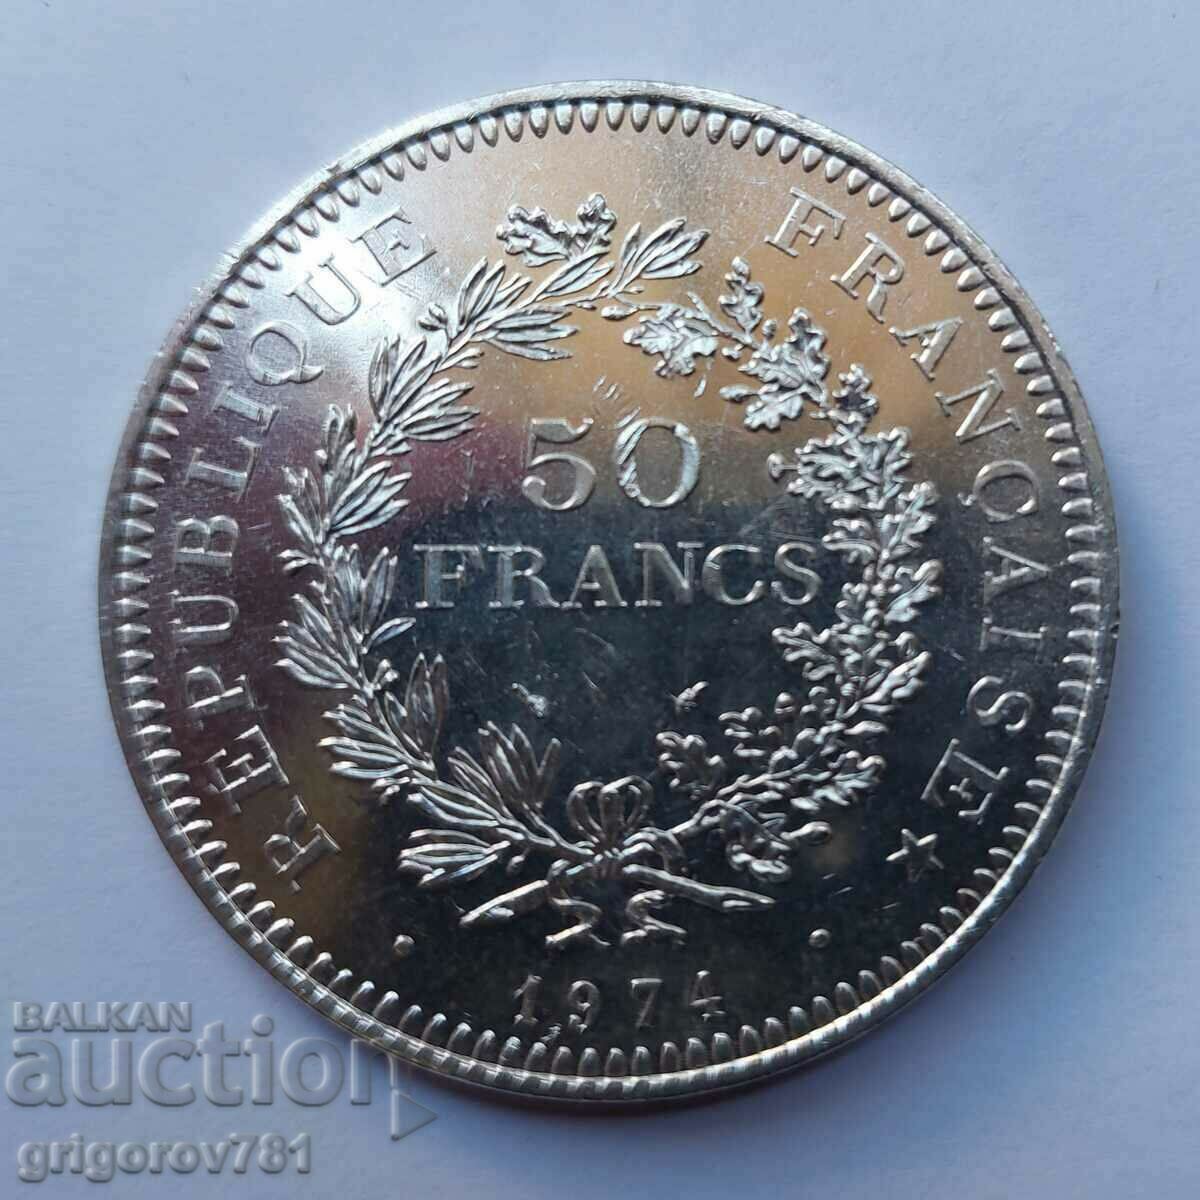 50 Franci Argint Franta 1974 - Moneda de argint #14